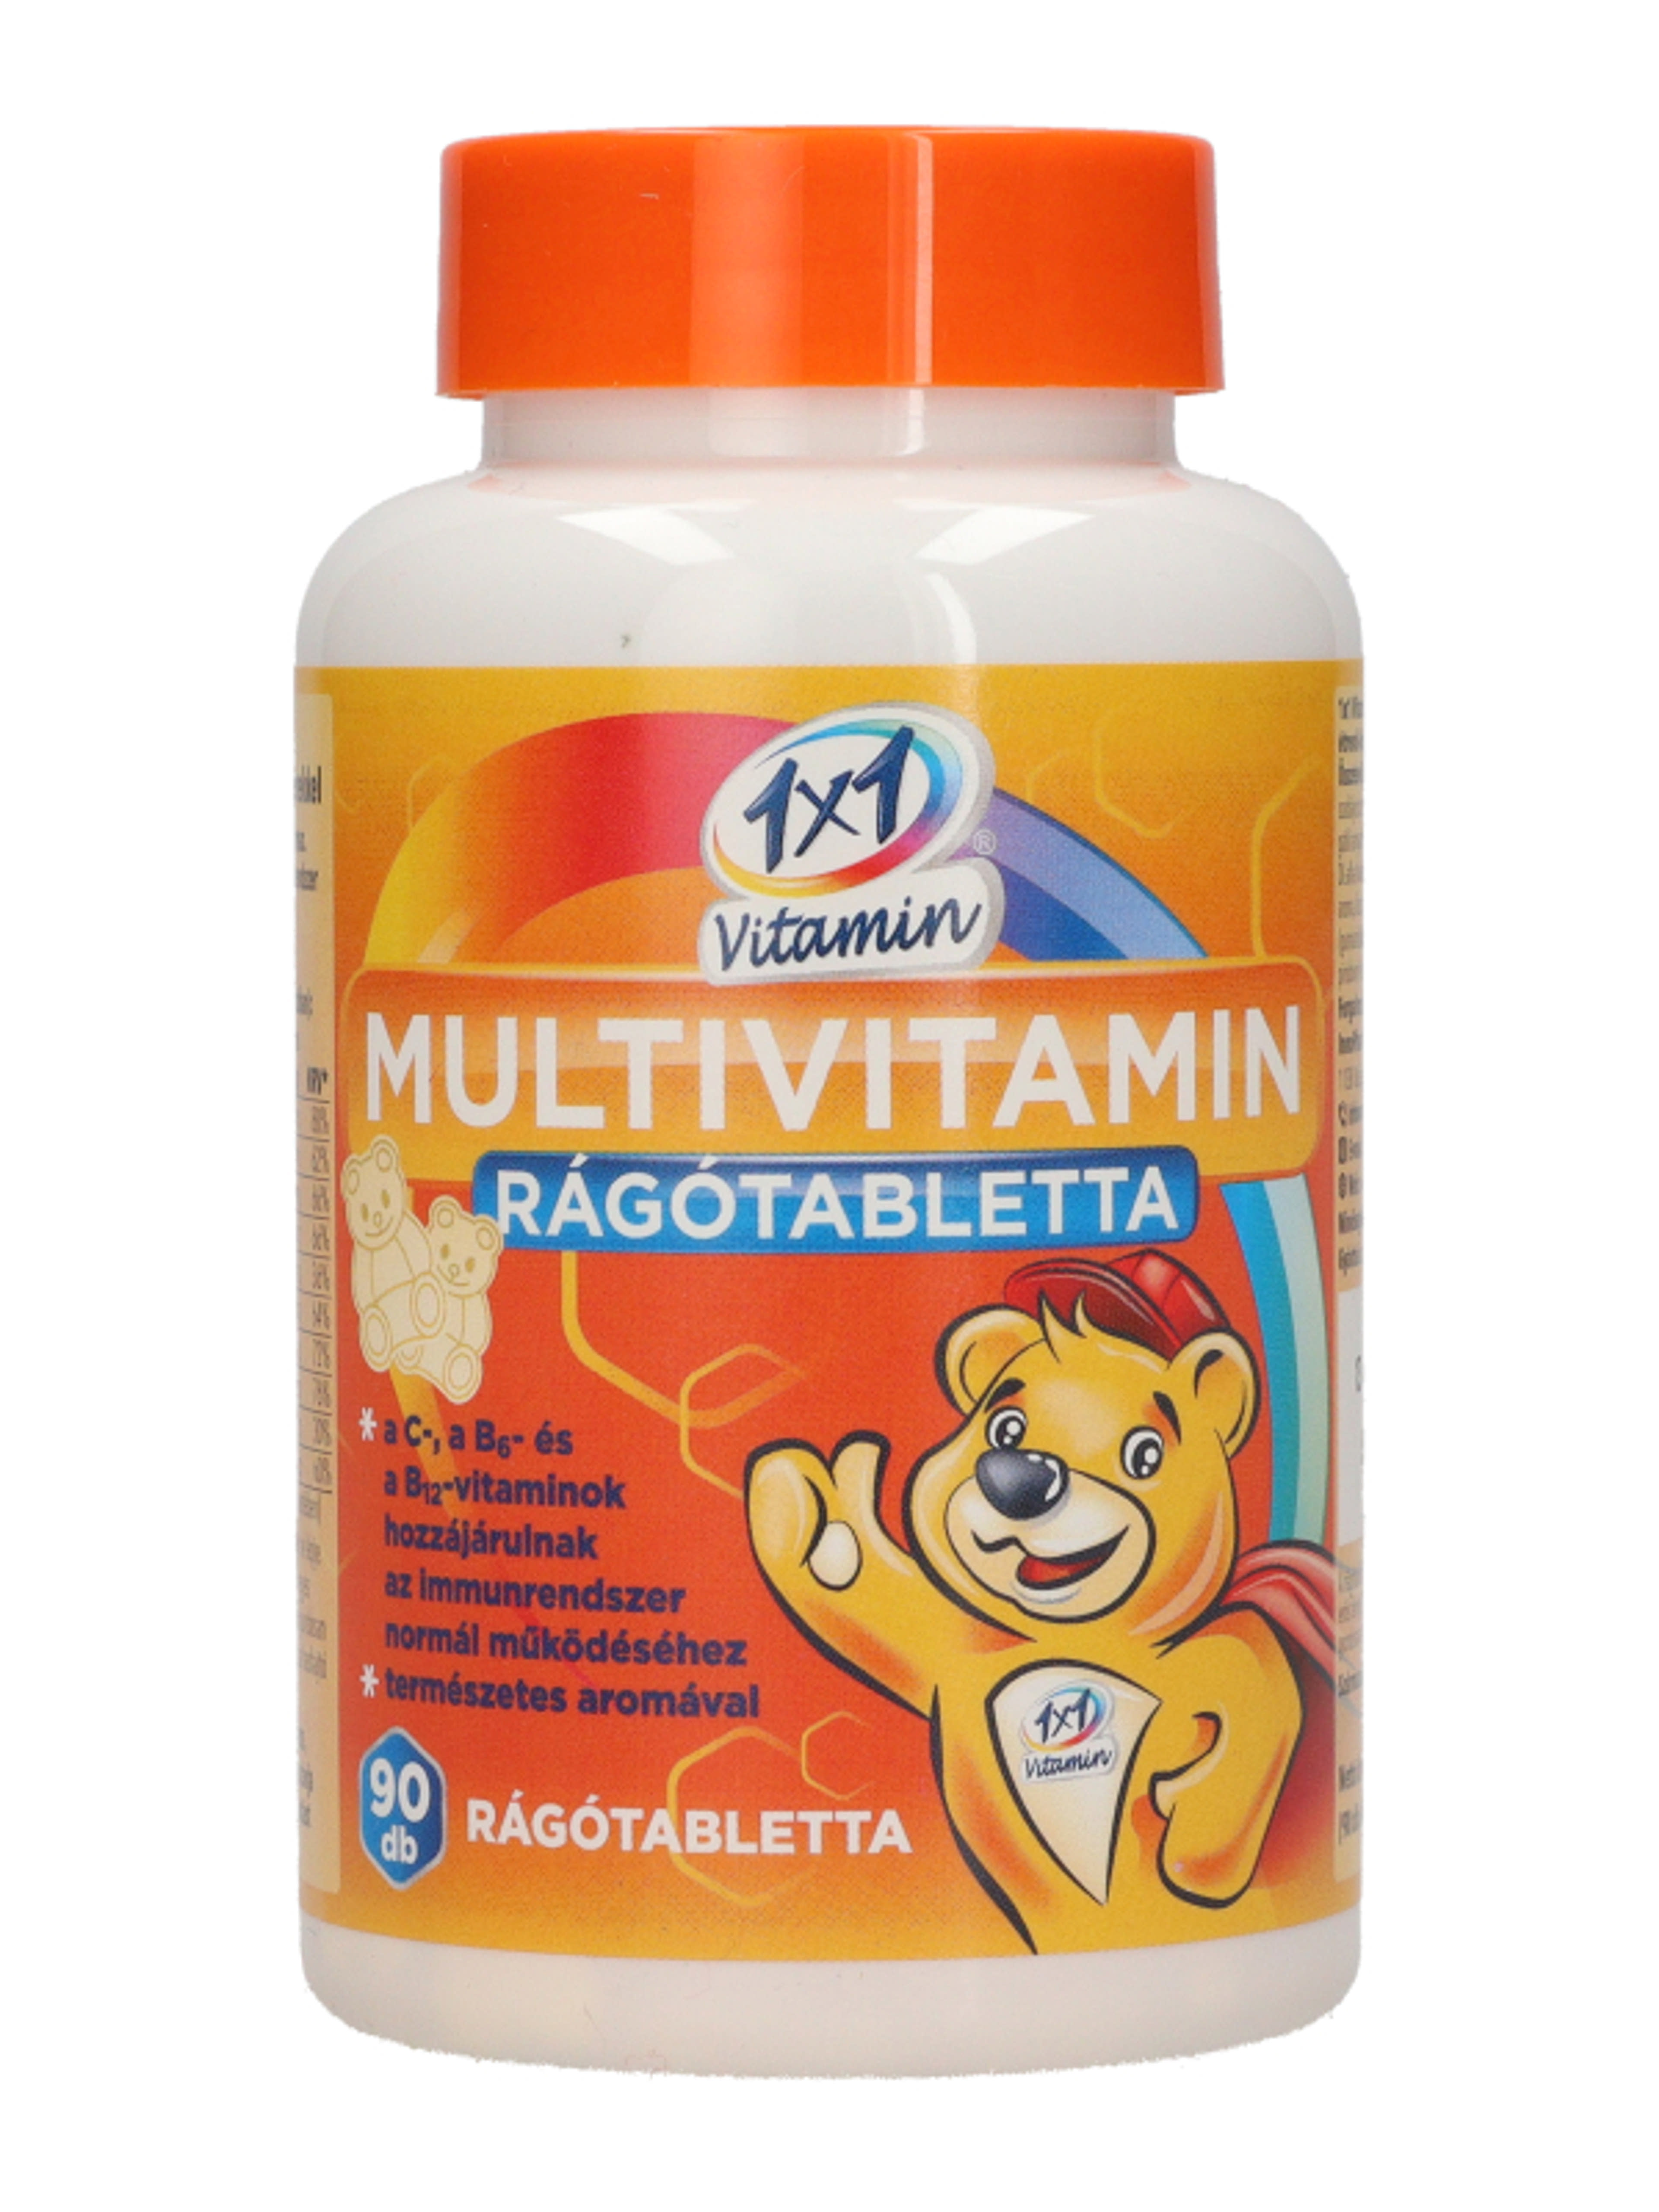 1x1 Vitamin Multivitamin rágótabletta macis - 90 db-2